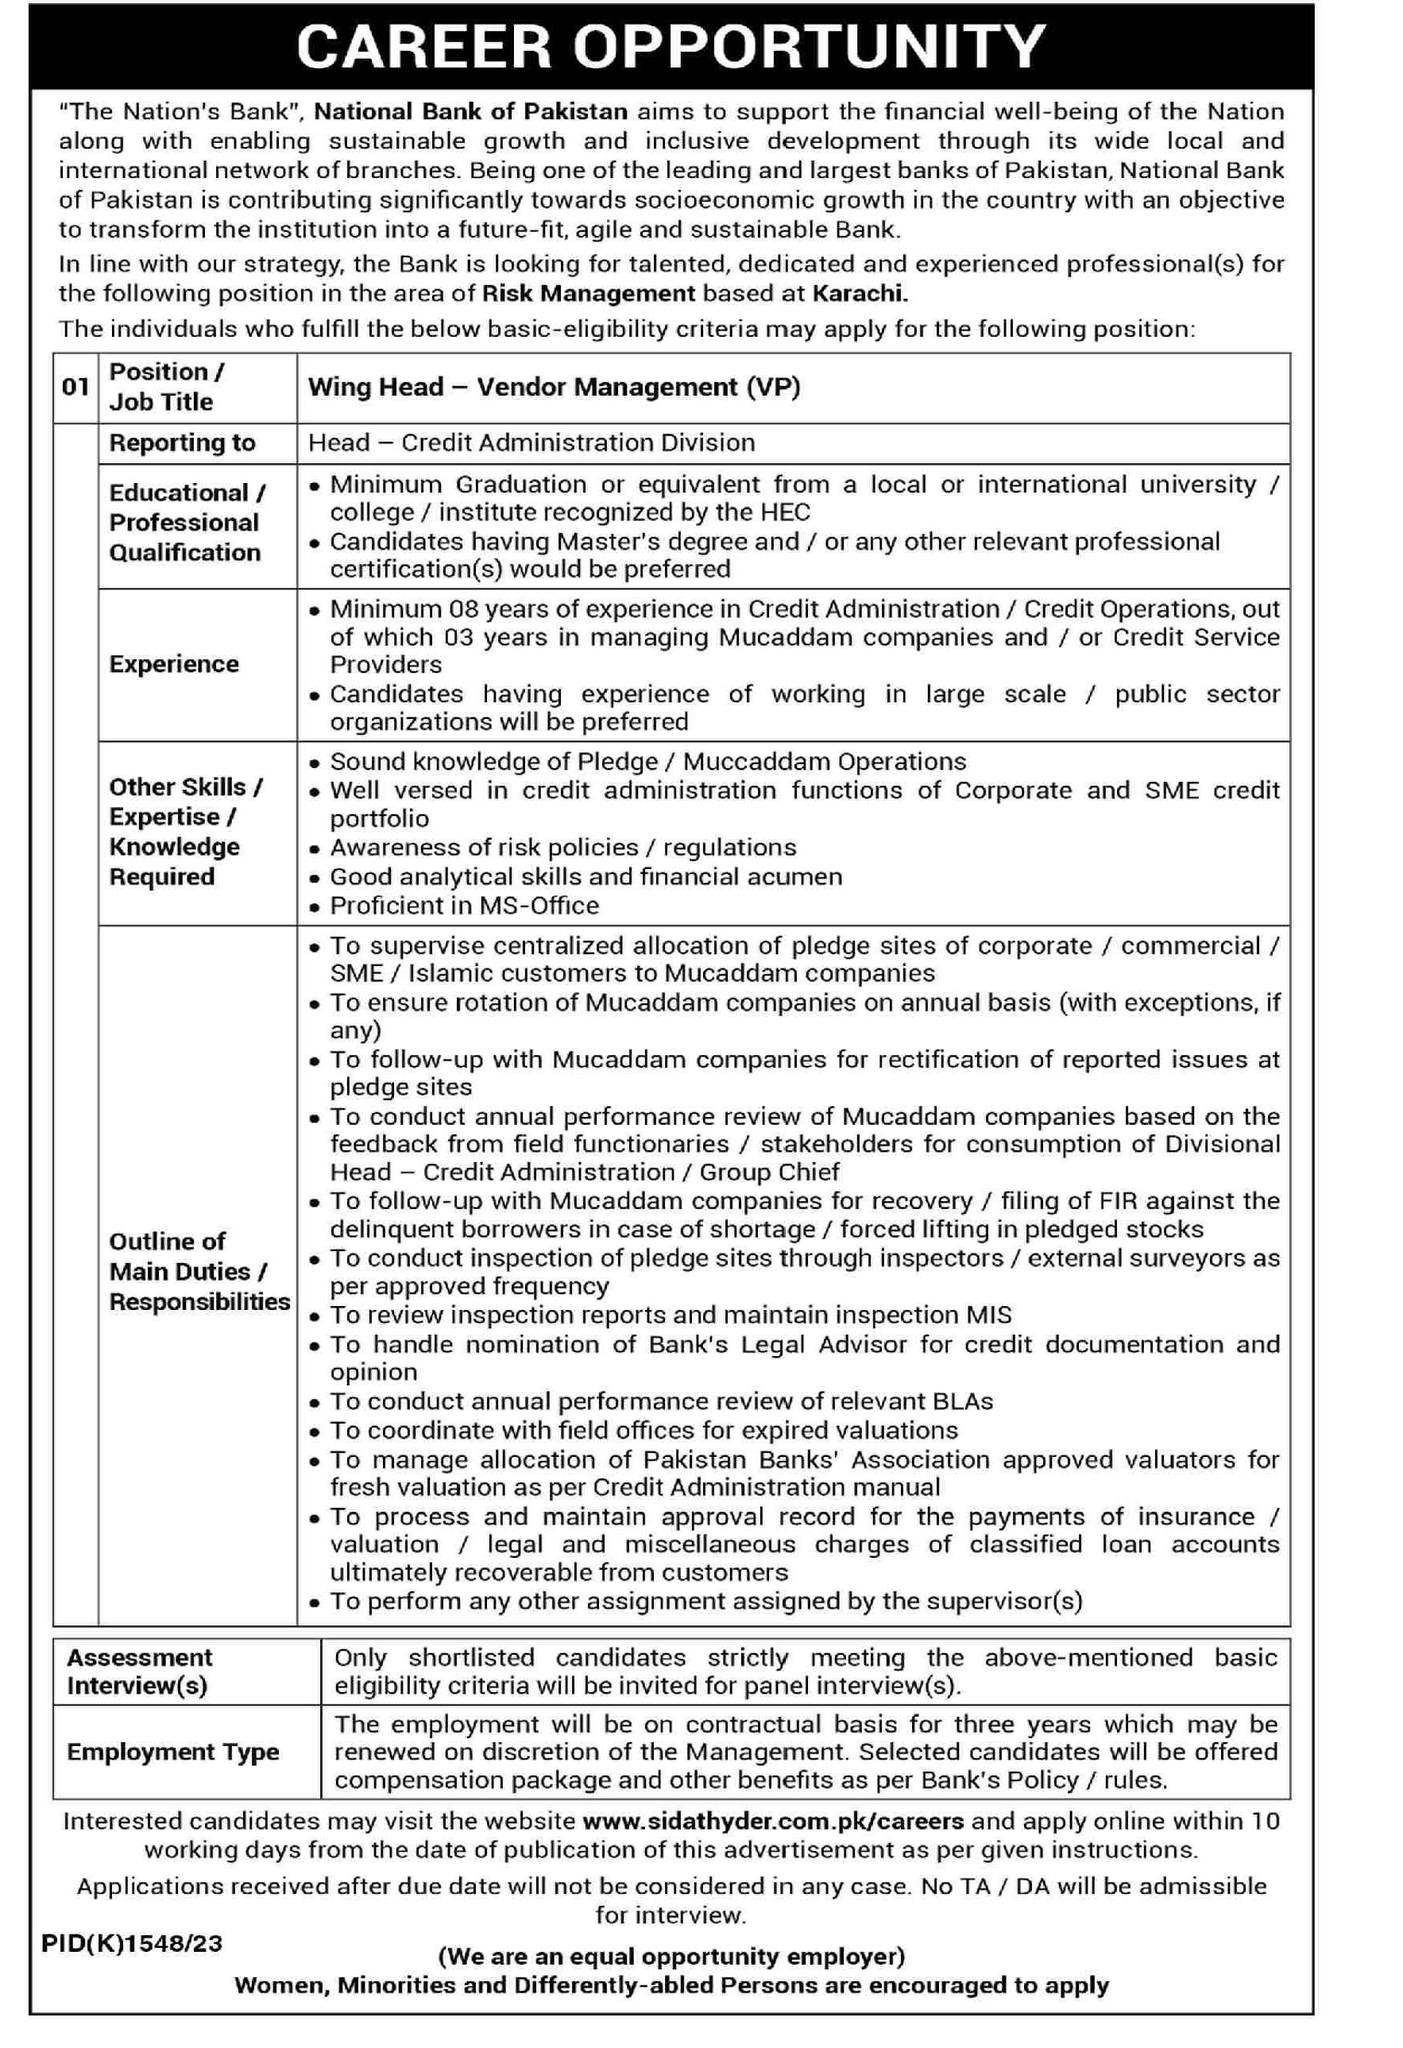 The National Bank Of Pakistan NBP Jobs 2023 